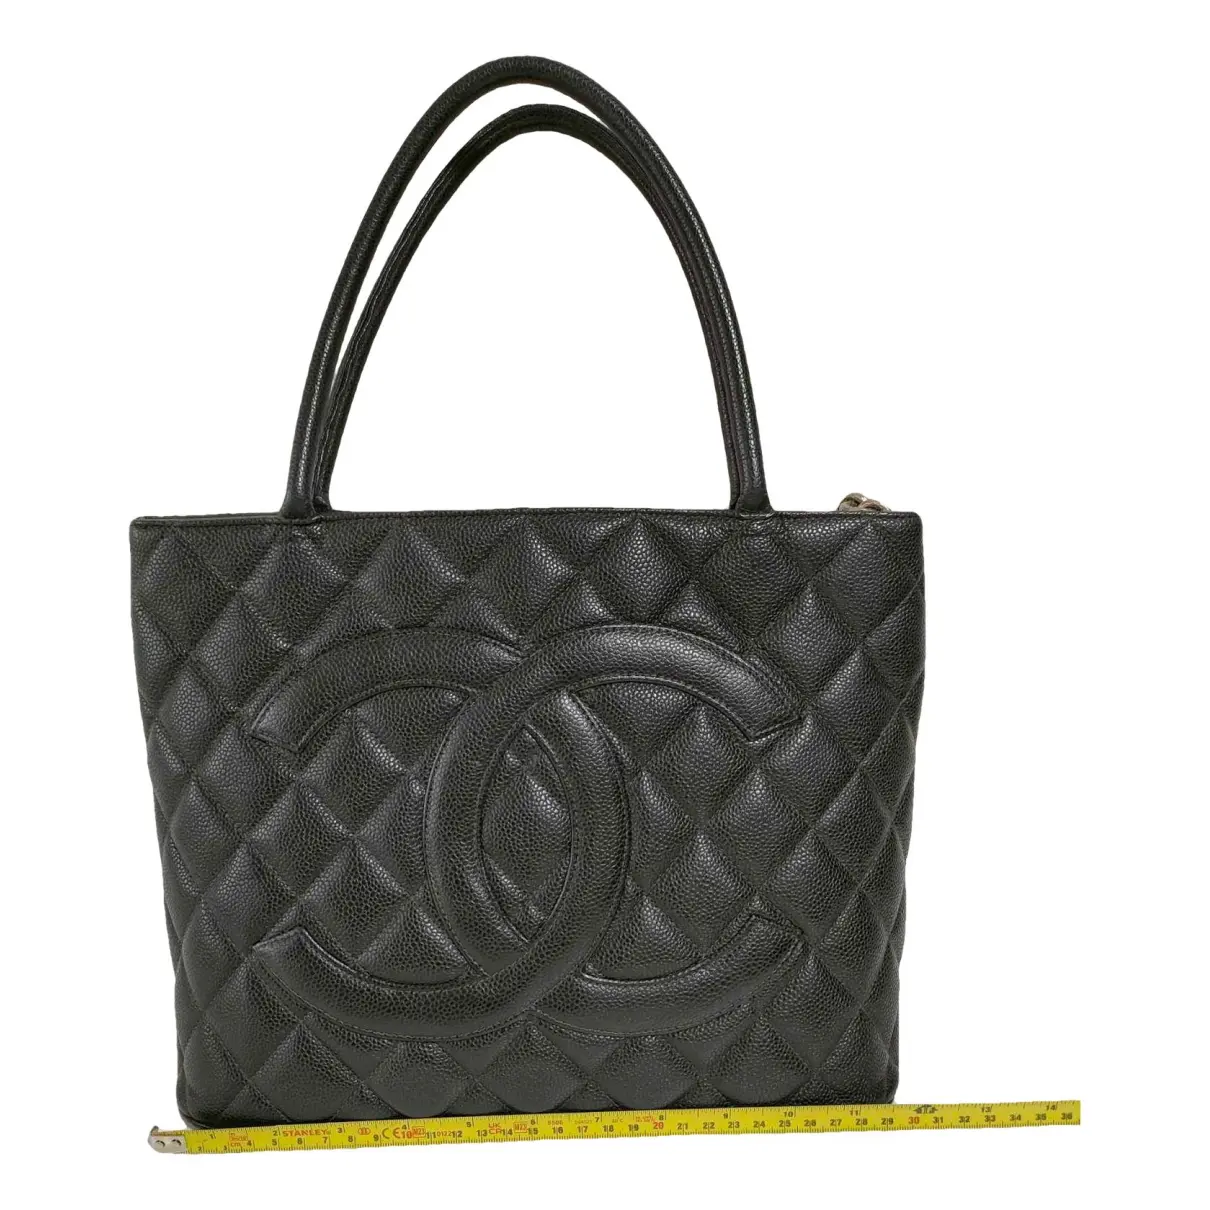 Médaillon leather handbag